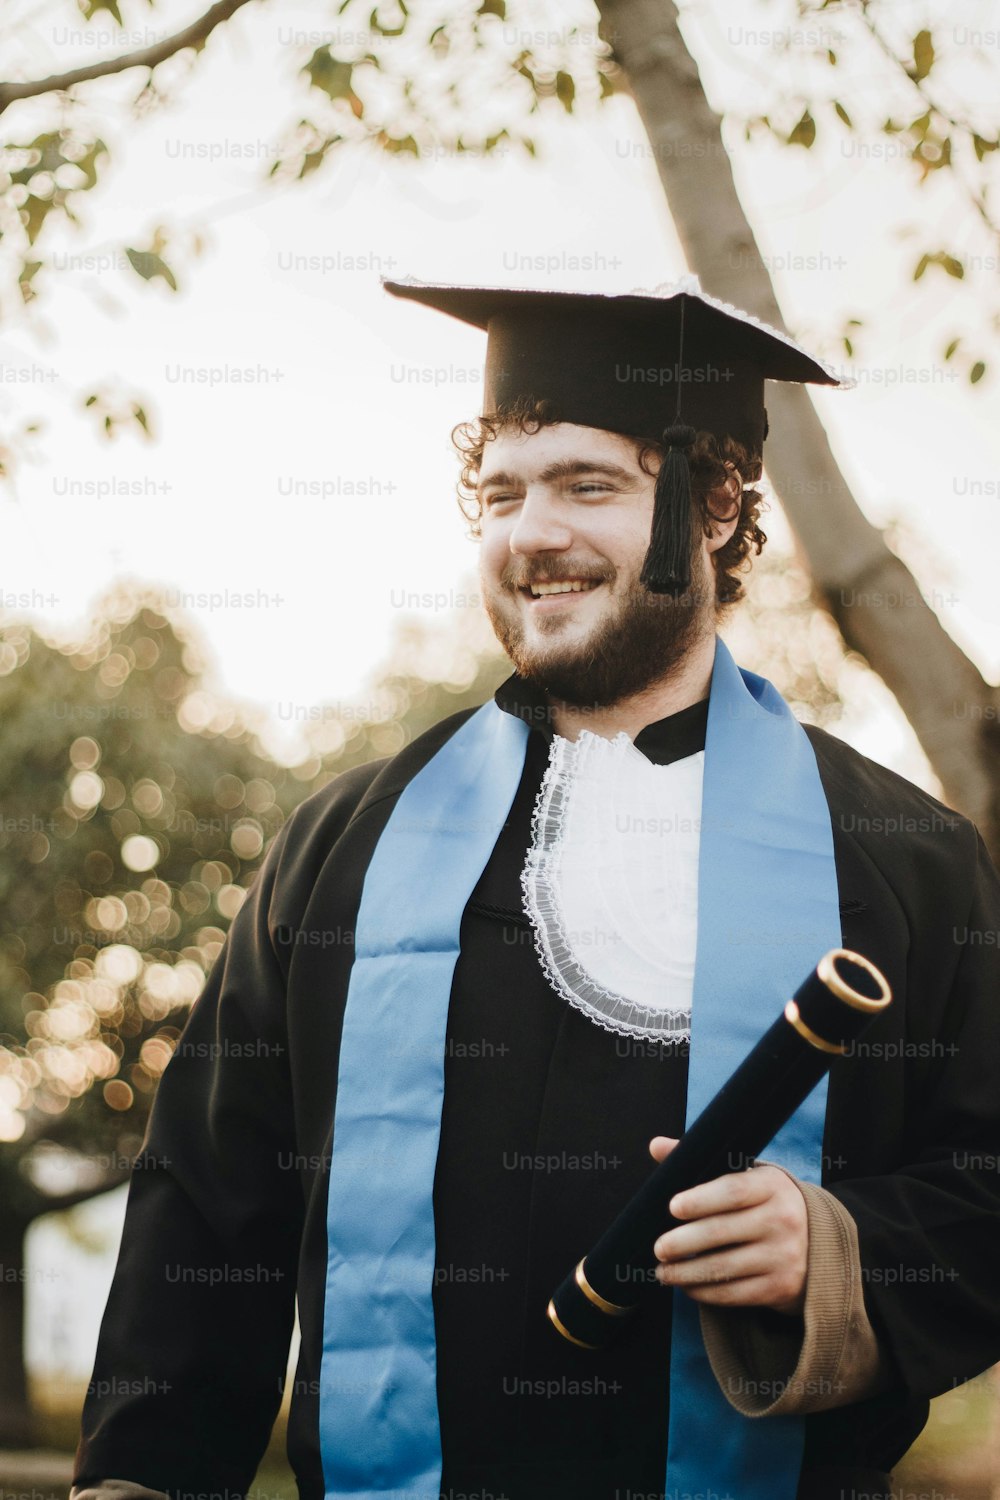 Un uomo in un berretto e un abito con un diploma